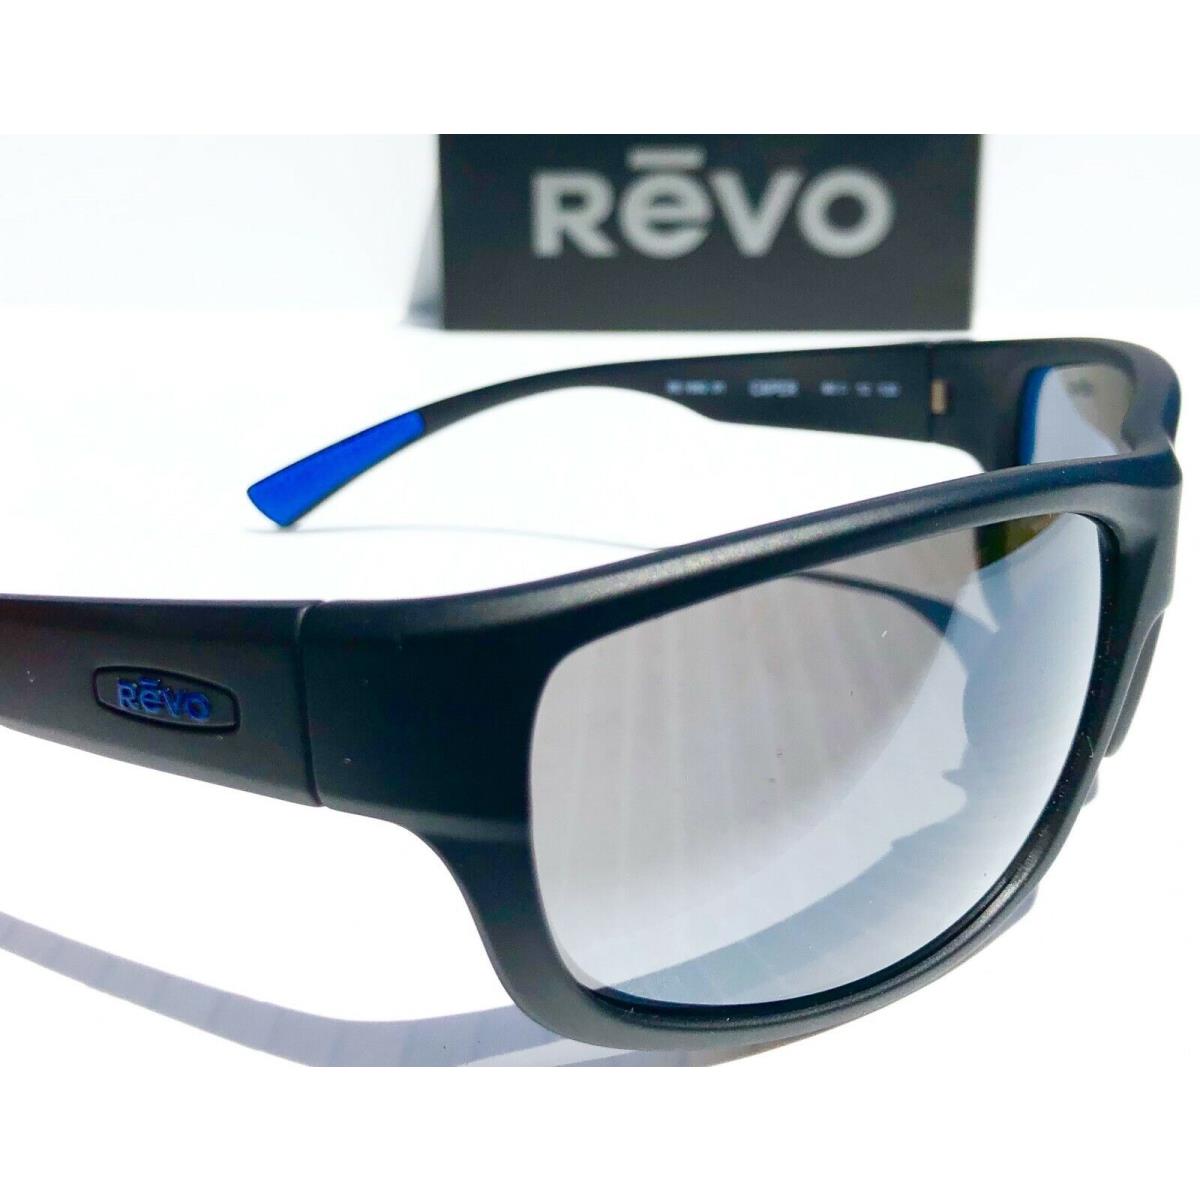 Revo sunglasses  - Black Frame, Graphite Grey view Lens